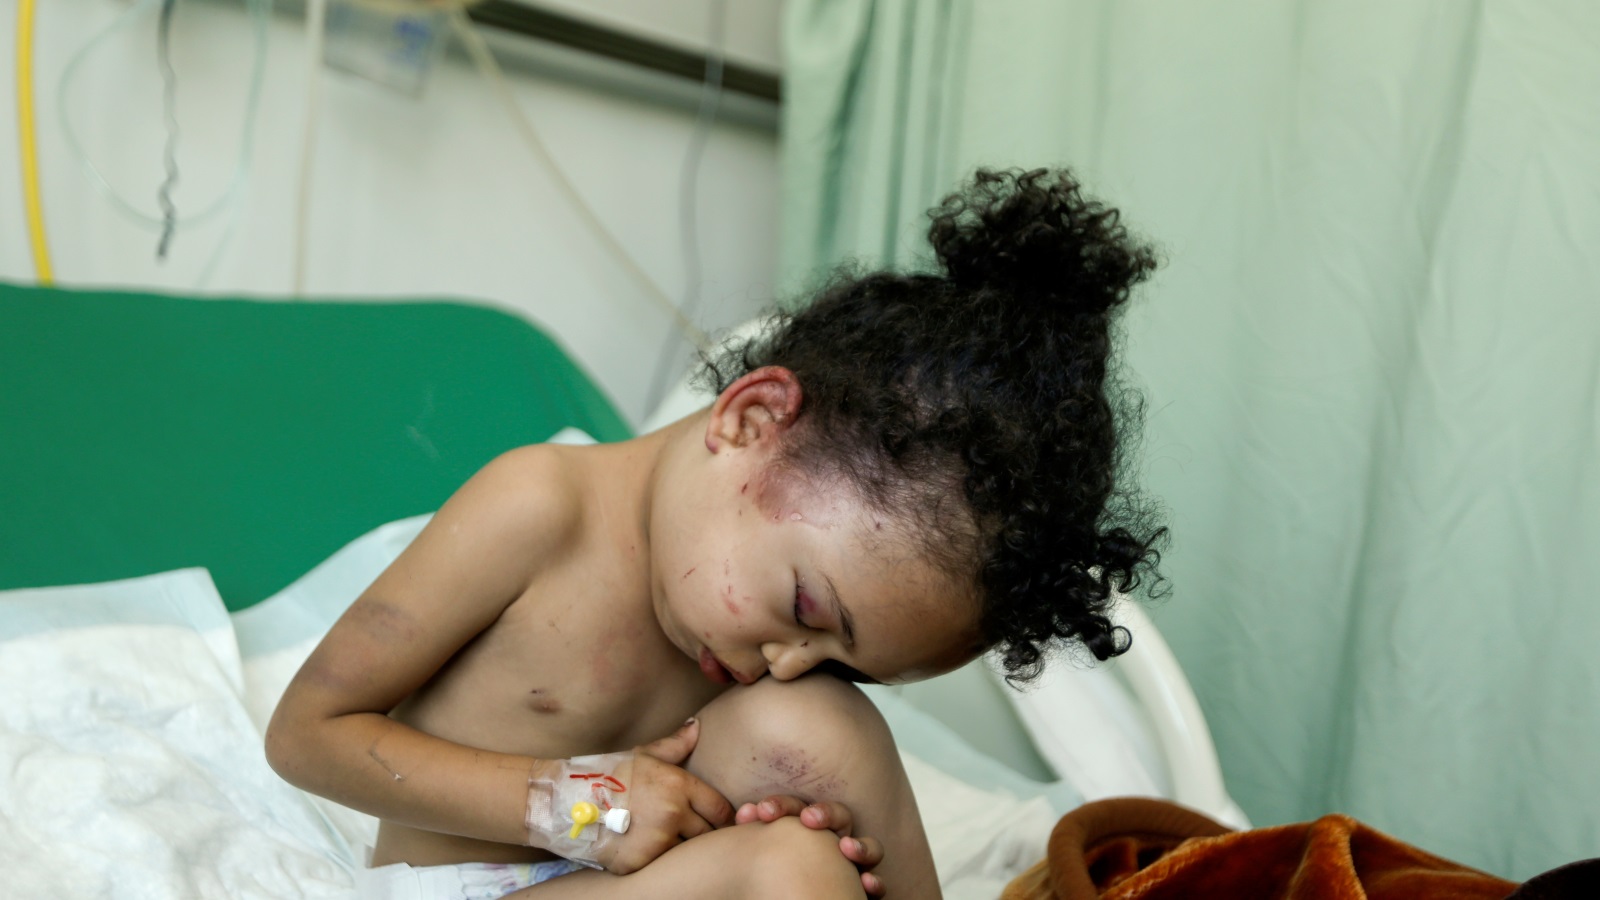 الطفلة اليمنية بثينة الناجية من قصف منزلها في صنعاء يوم 26 أغسطس/آب 2017 بعد مقتل عدد من أفرادها (رويترز)